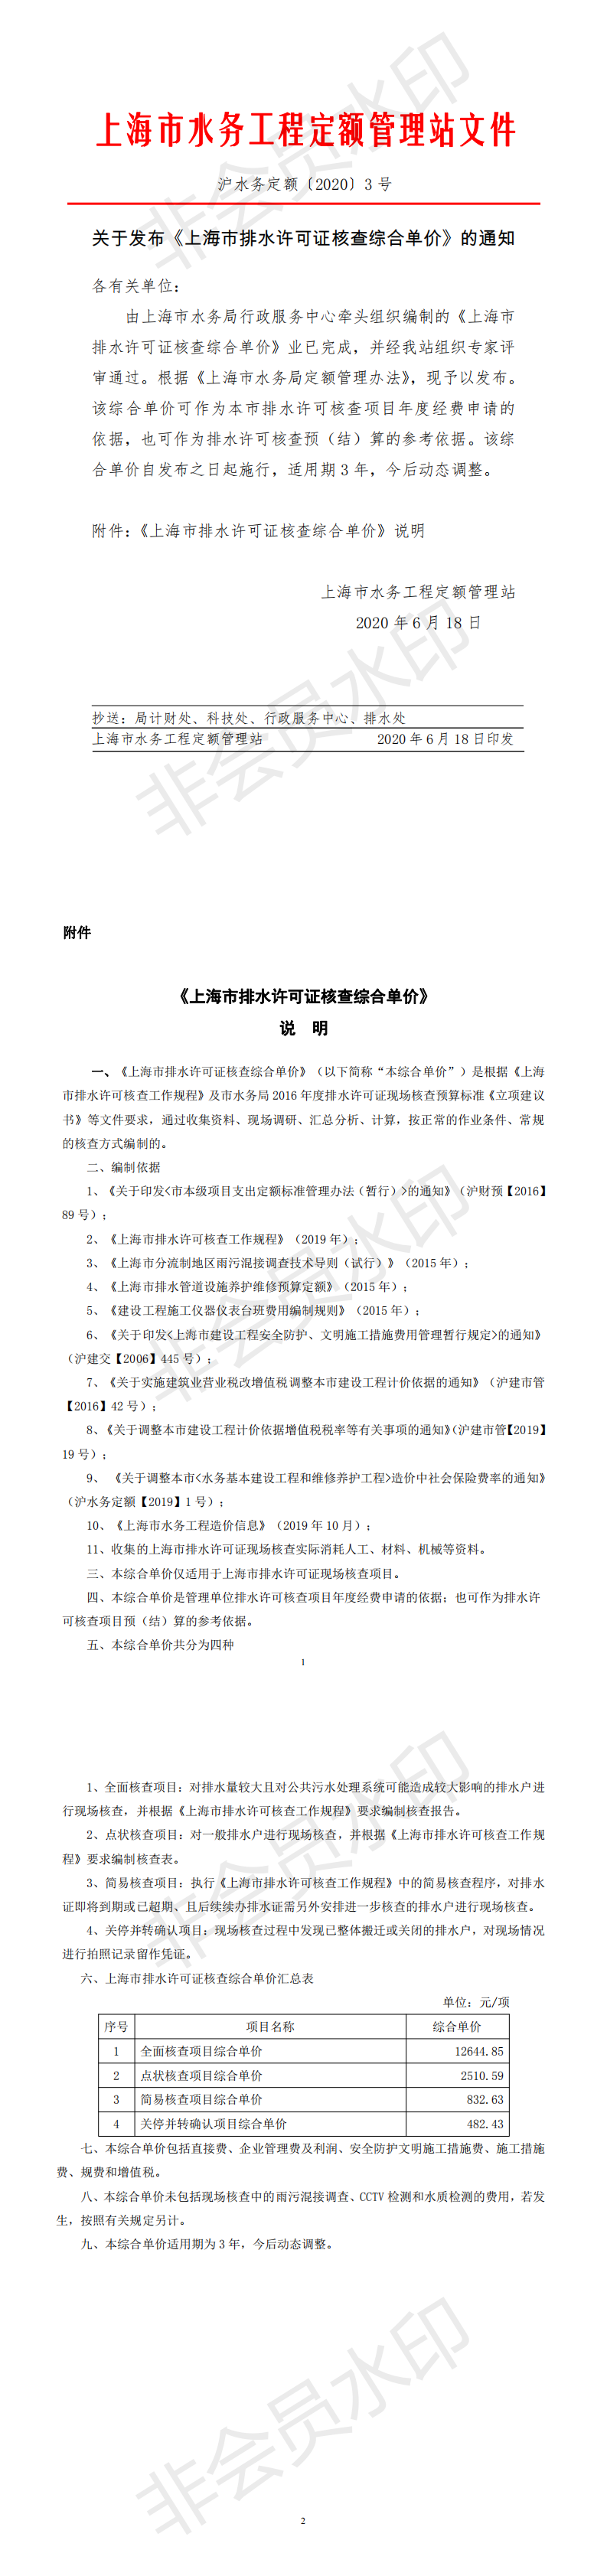 关于发布《上海市排水许可证核查综合单价》的通知_0.png